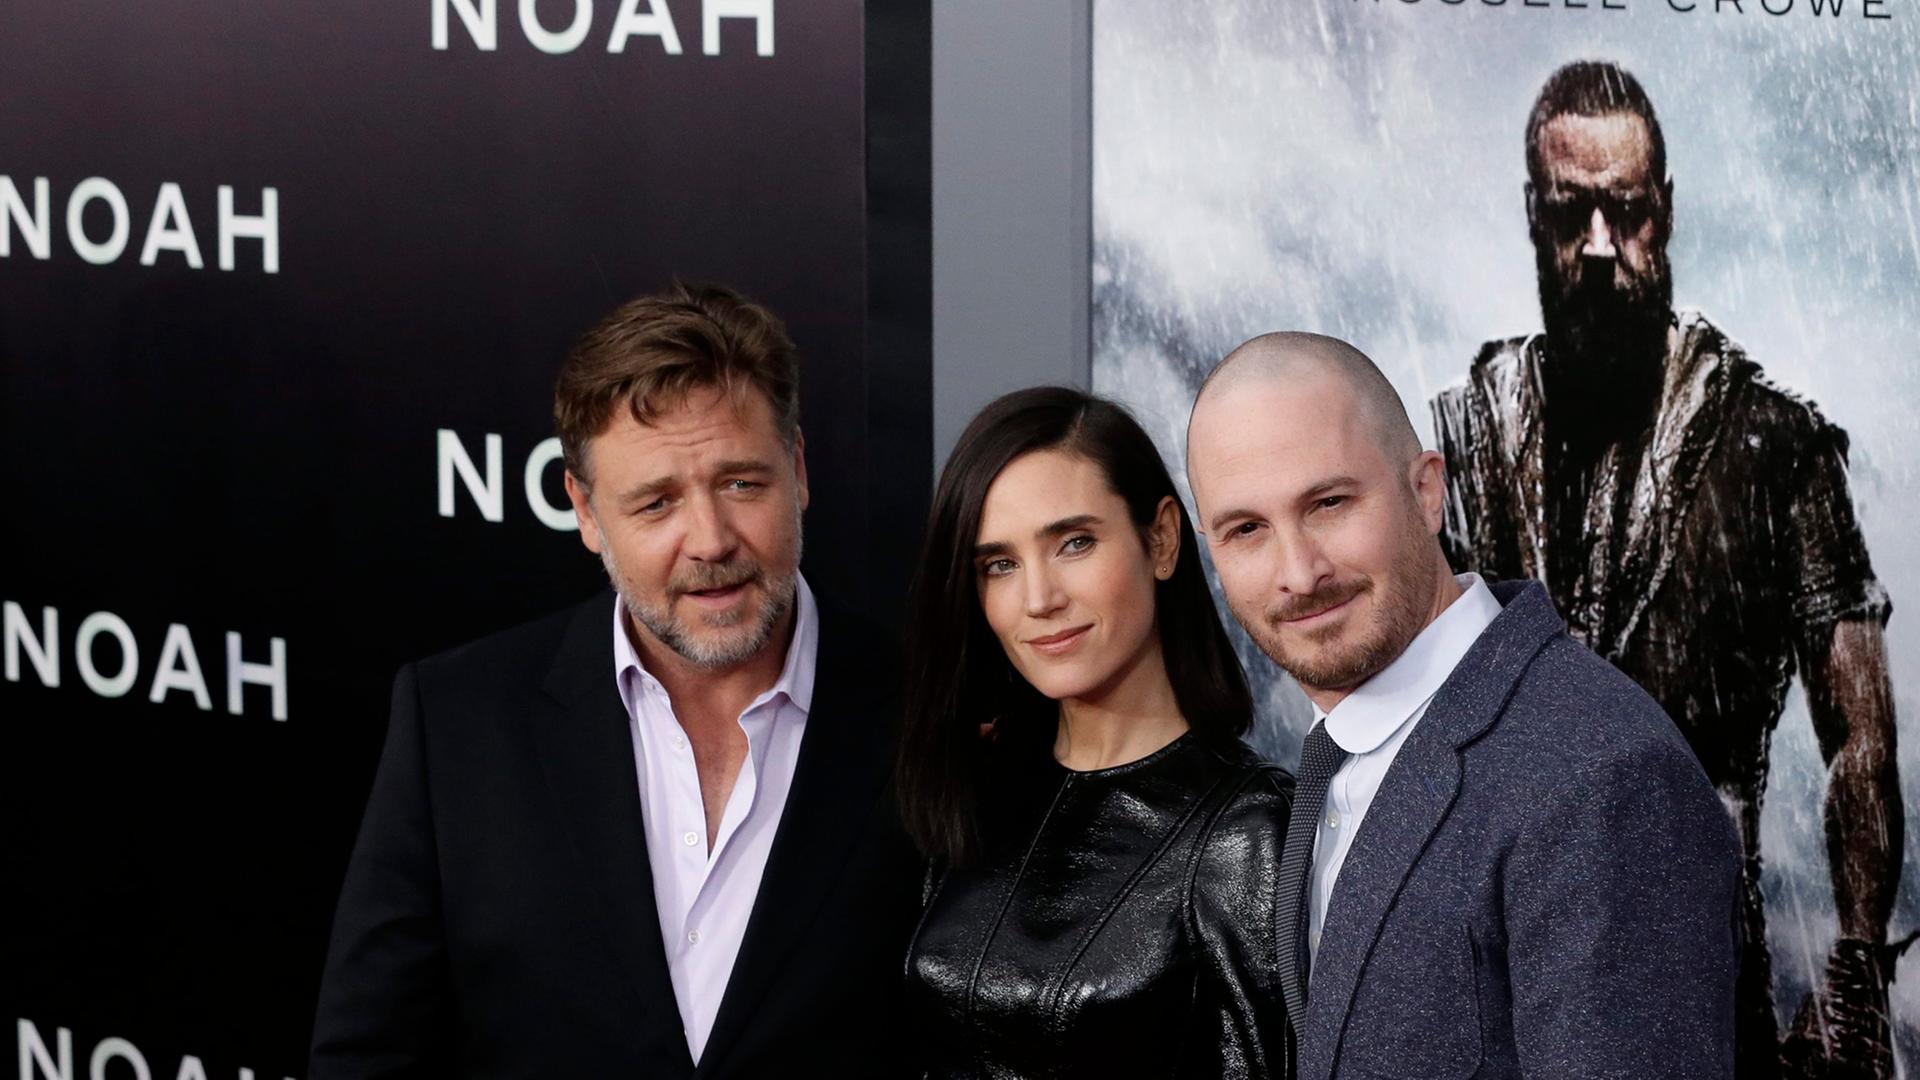 Regisseur Darren Aronofsky posiert mit den Hauptdarstellern Jennifer Connelly und Russell Crowe bei der Premiere von "Noah" in New York für die Fotografen.